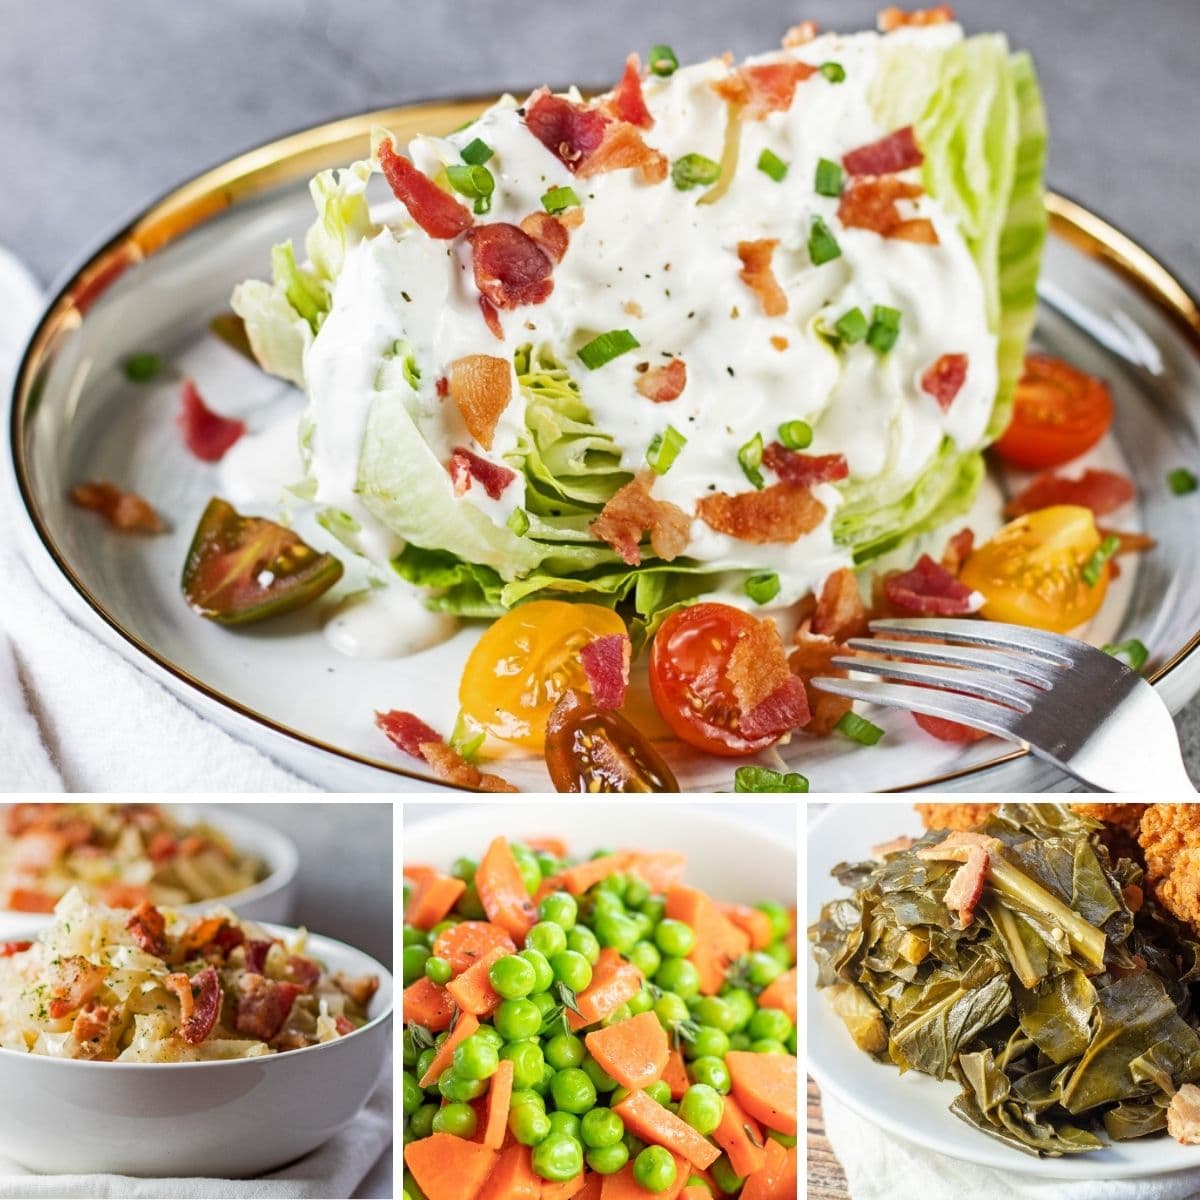 Най-добрите зеленчукови гарнитури за сервиране към всяко хранене, както е показано с тези 4 представени рецепти в колажно изображение.